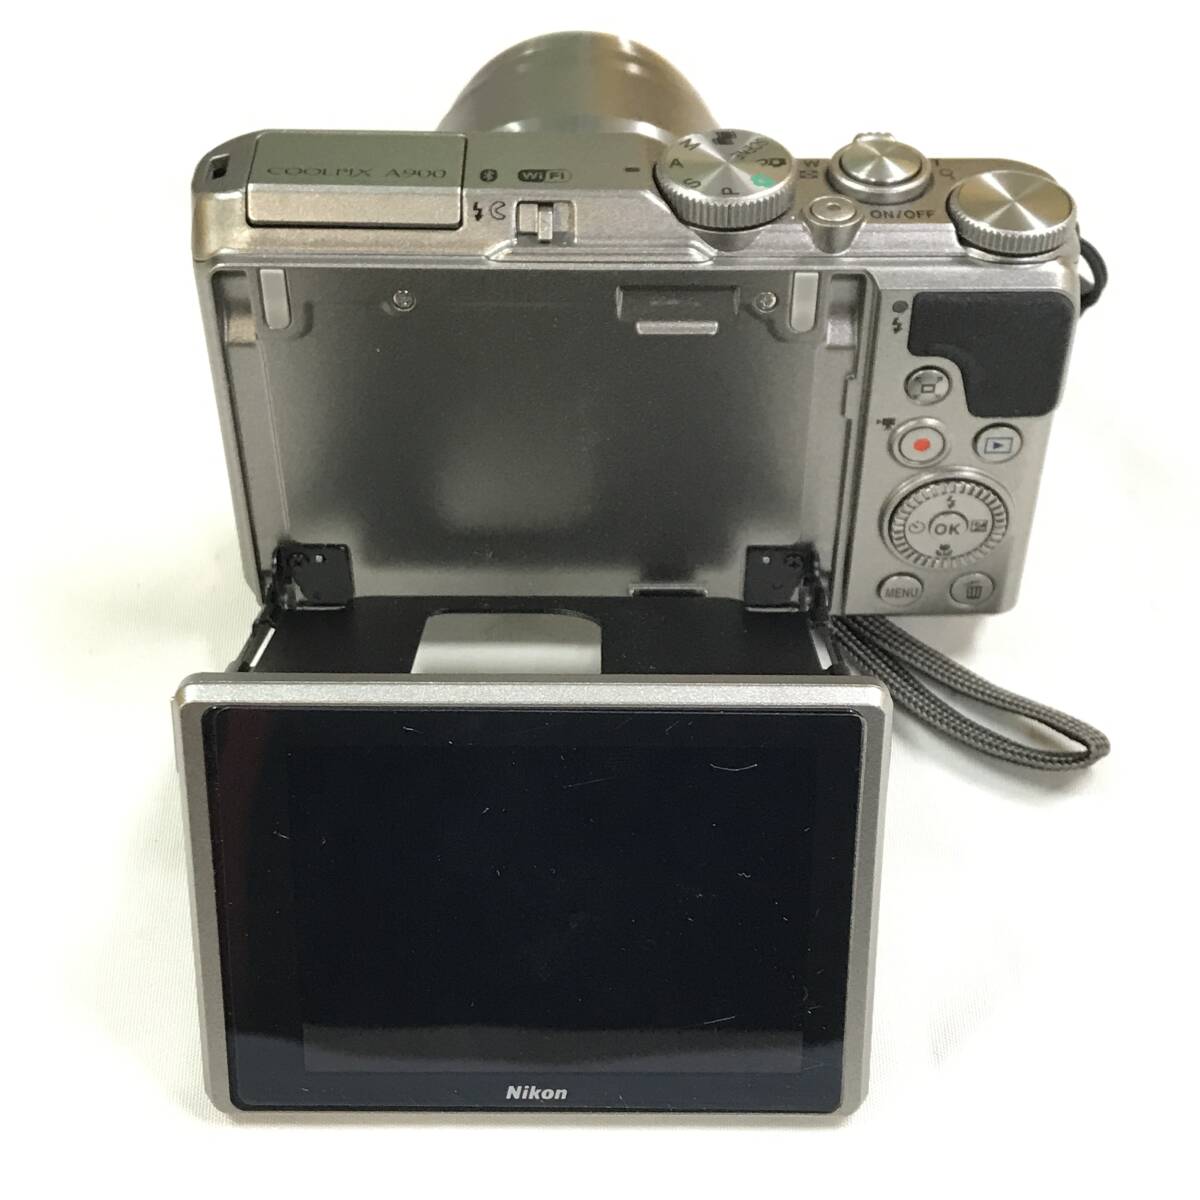 sb2477 бесплатная доставка! текущее состояние товар Nikon Nikon COOLPIX A900 компактный цифровой фотоаппарат серебряный корпус * батарея только 